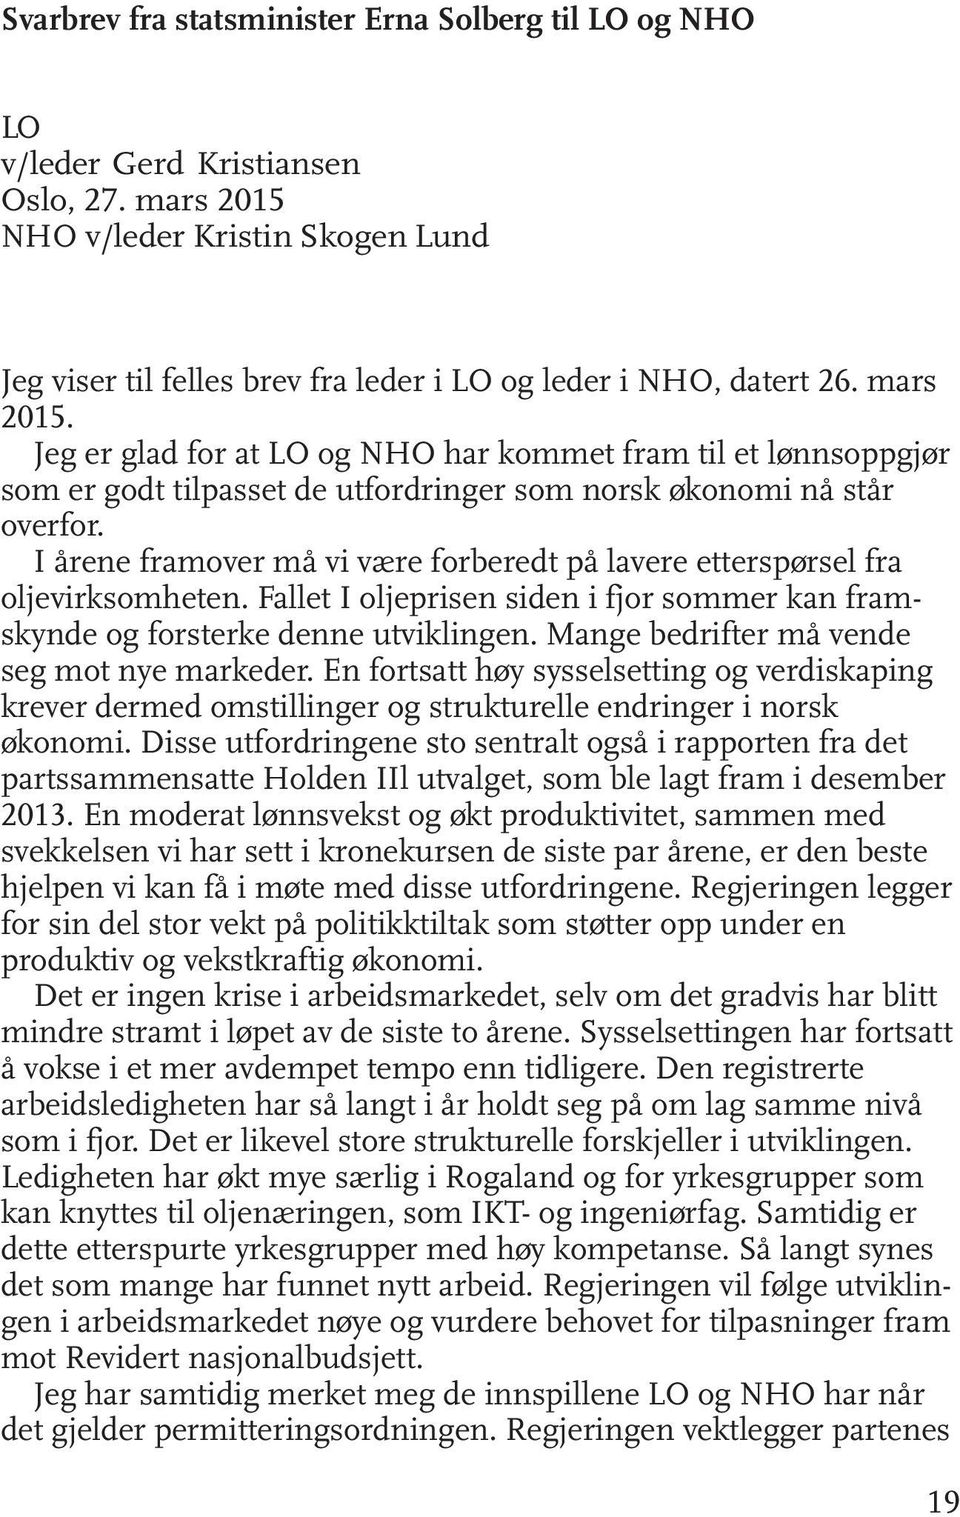 Jeg er glad for at LO og NHO har kommet fram til et lønnsoppgjør som er godt tilpasset de utfordringer som norsk økonomi nå står overfor.